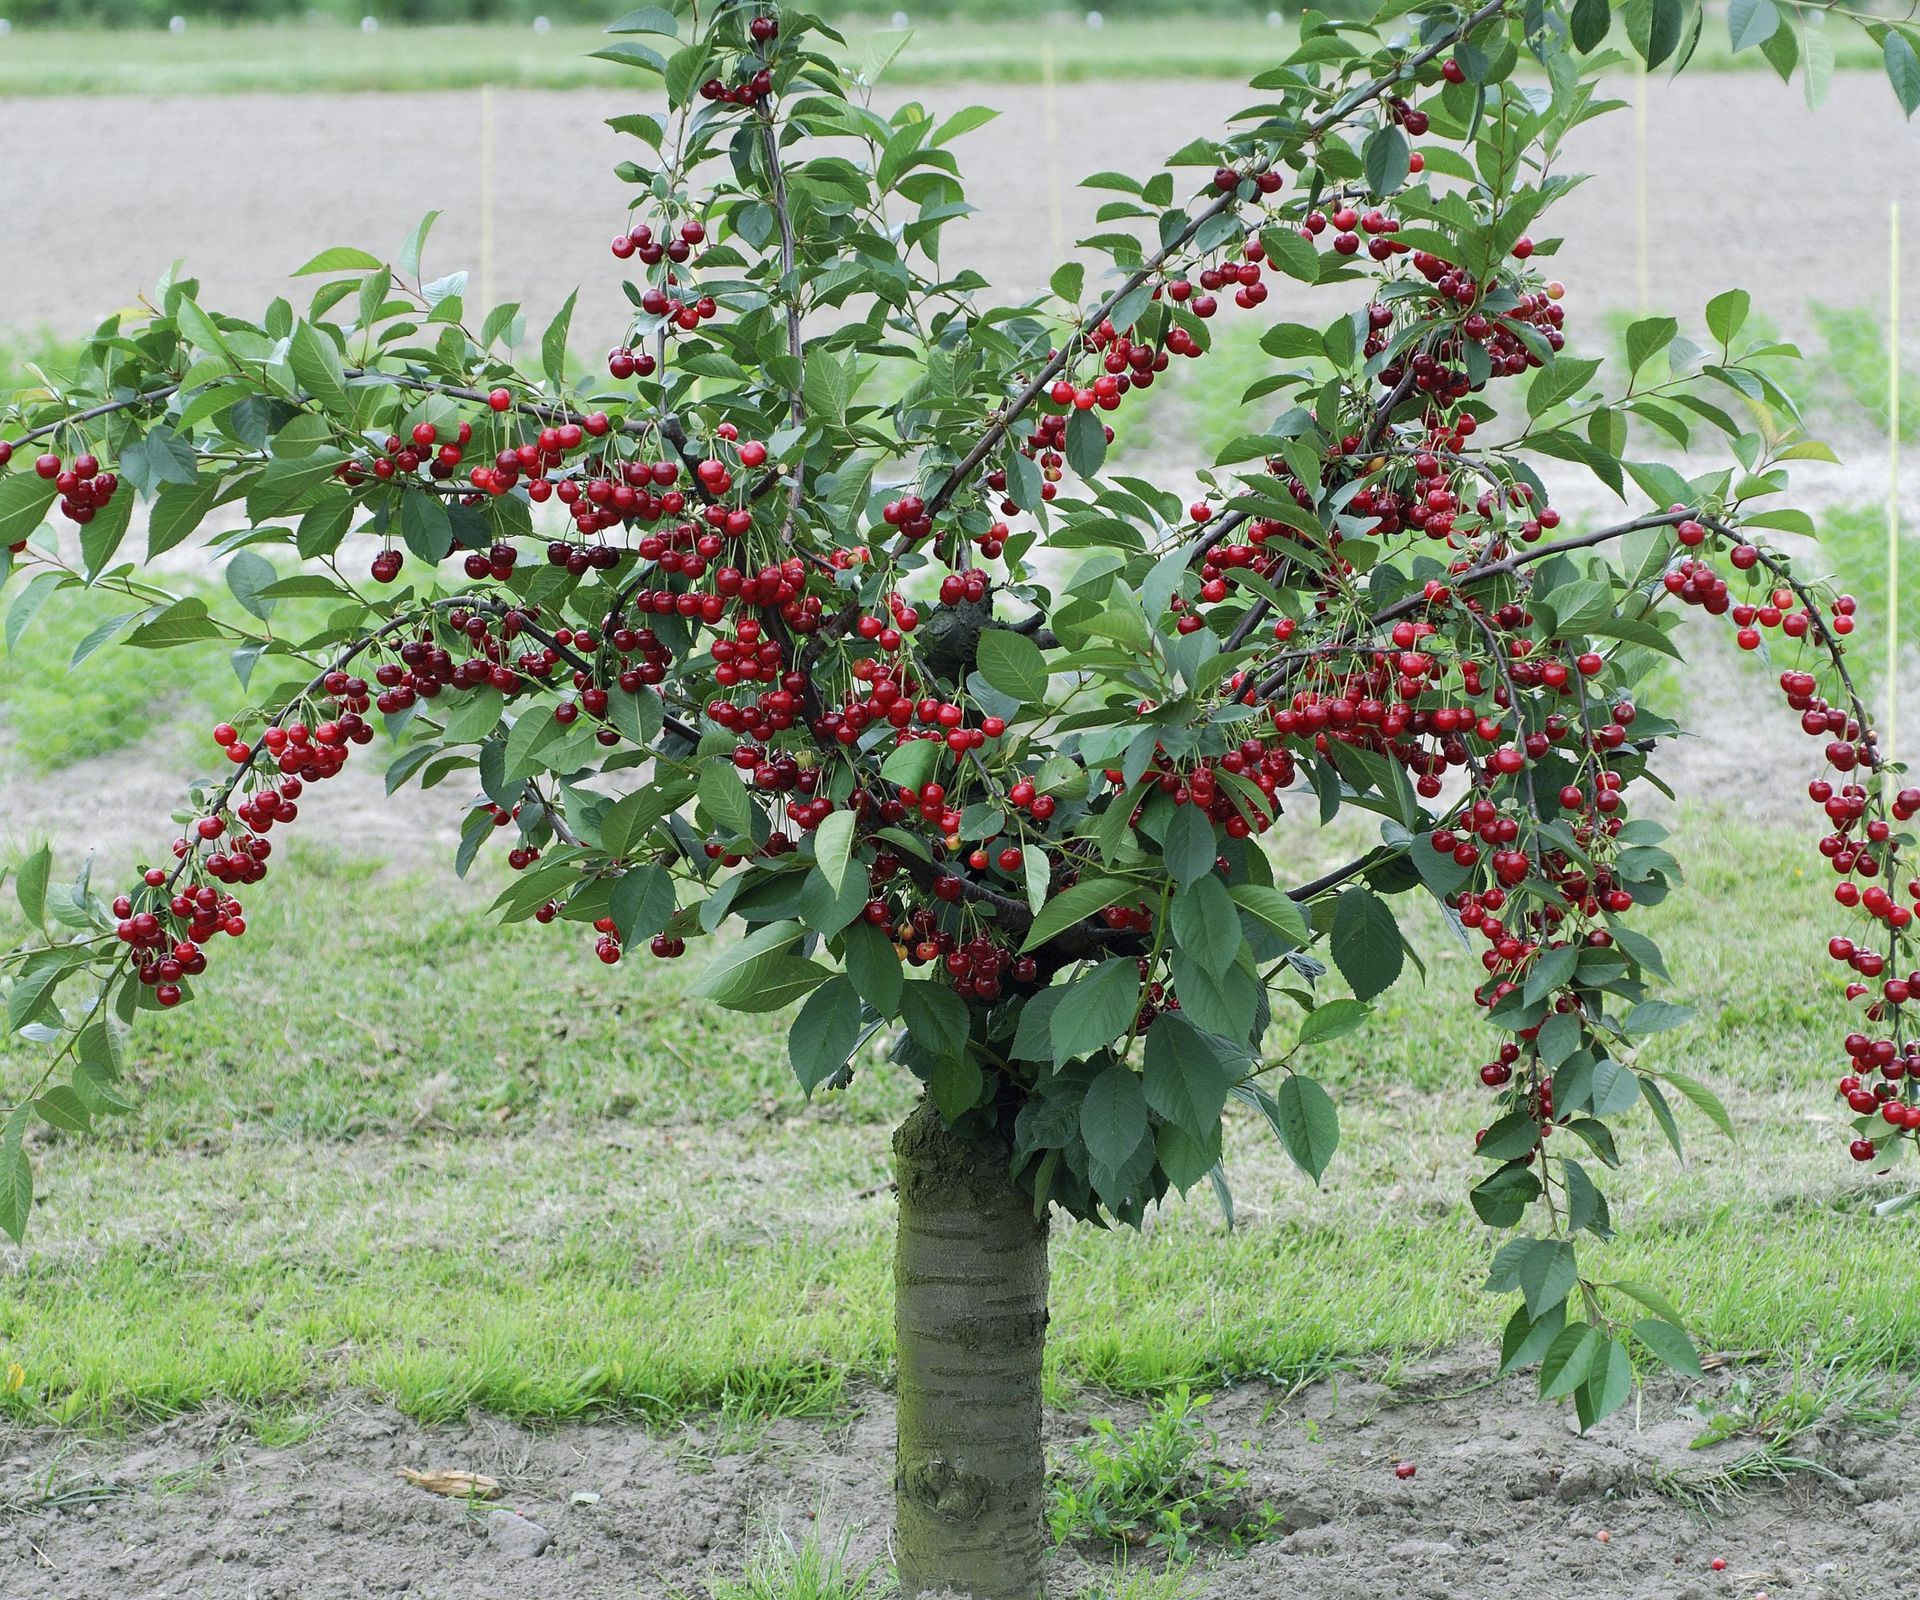 8 Of The Best Fruit Trees For Small Gardens – Slight In Size Yet Full 